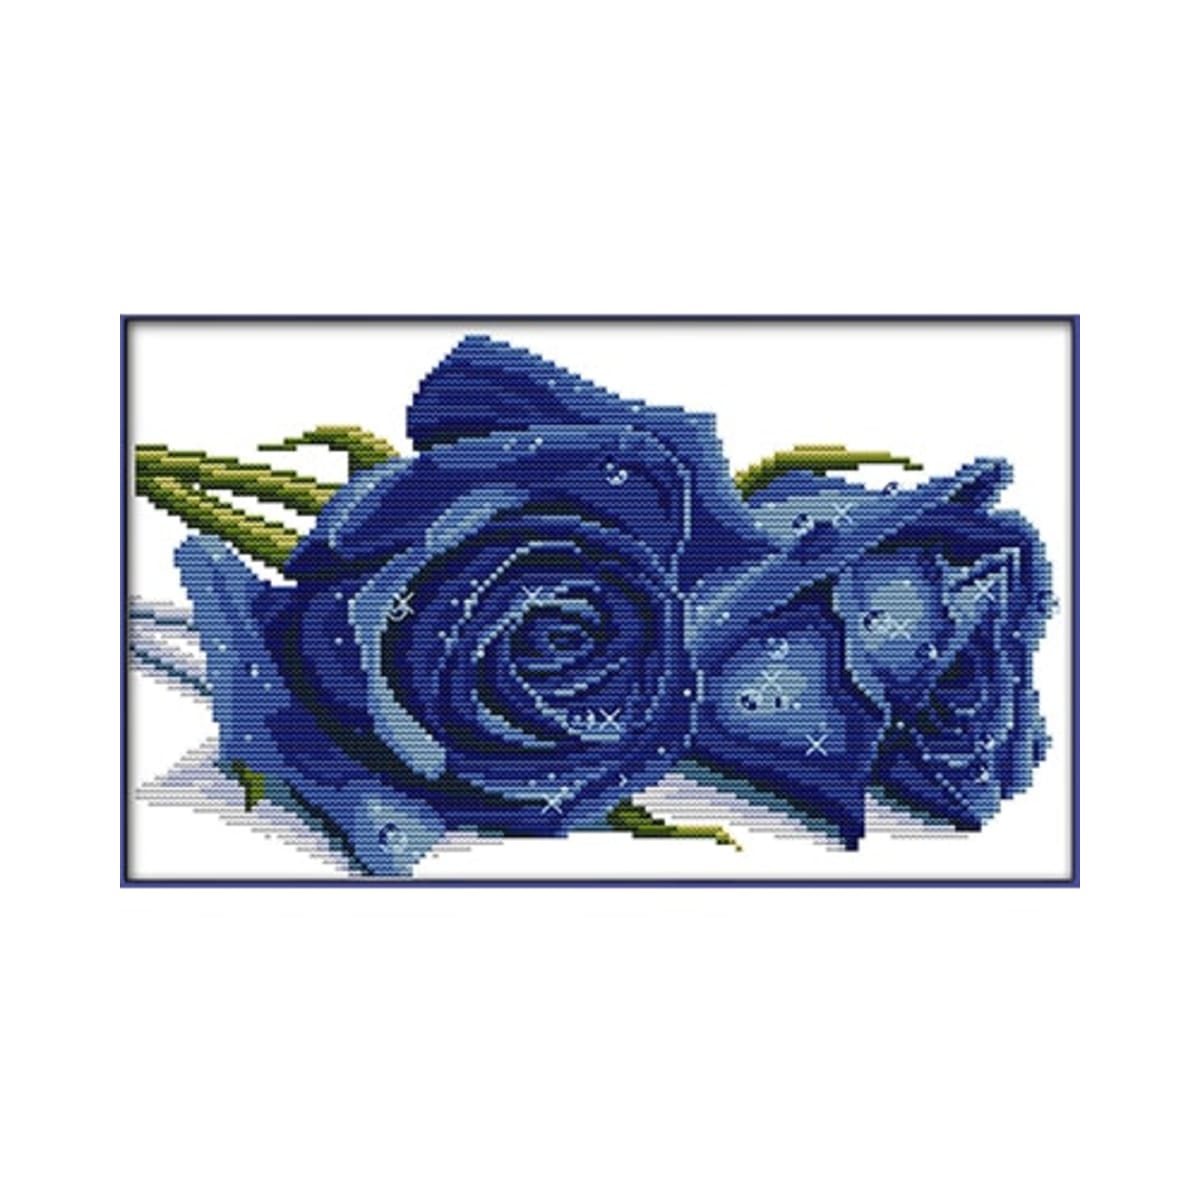 Farnia Sinisiä ruusuja ristipistopakkaus  verkkokauppa